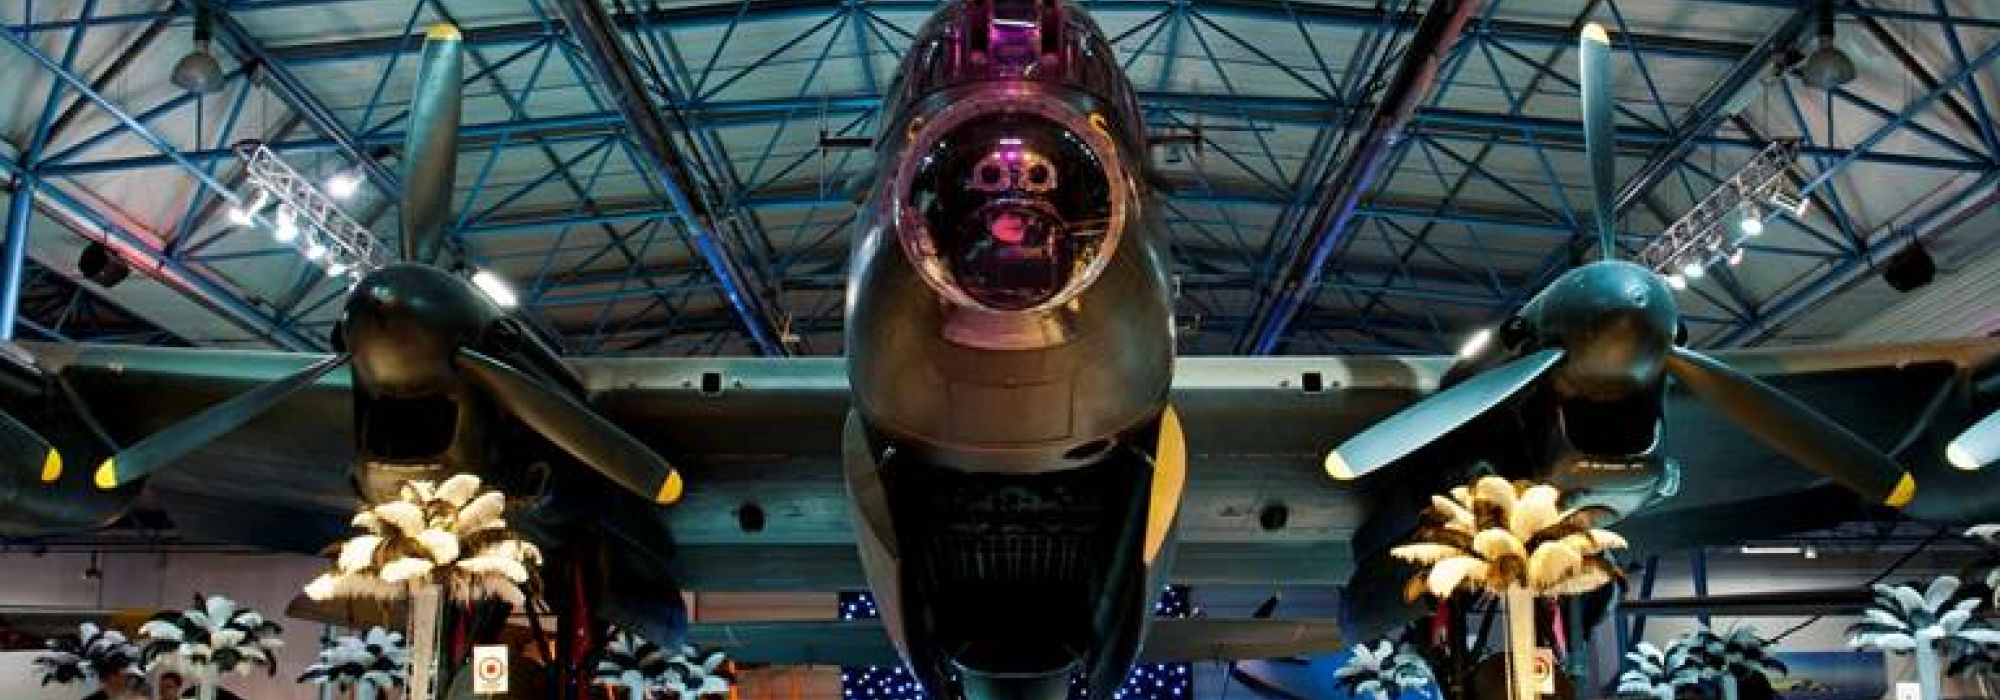 RAF-Museum-1.jpg